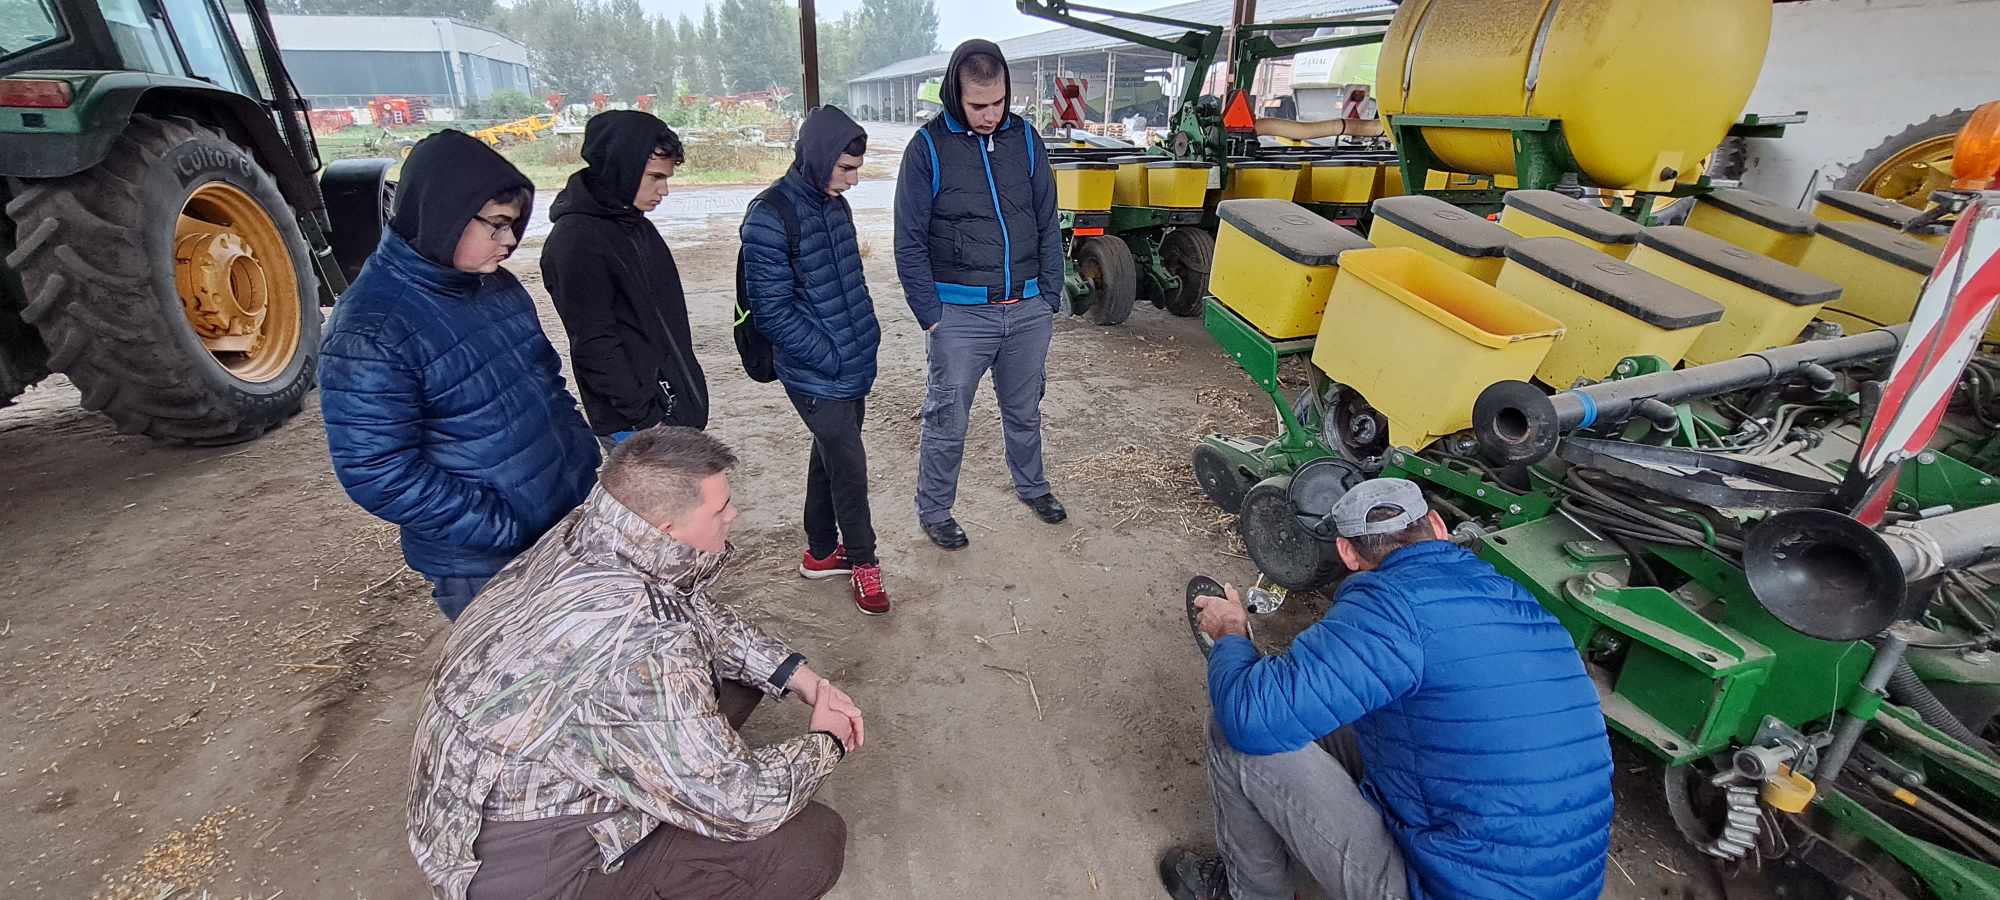 Emberek csoportja gyűlik össze egy ember körül, aki letérdel, és egy mezőgazdasági berendezésen dolgozik egy műhelyben. Egyesek kabátot és kapucnis pulcsit viselnek. A háttérben különféle gépek és egy traktor látható.